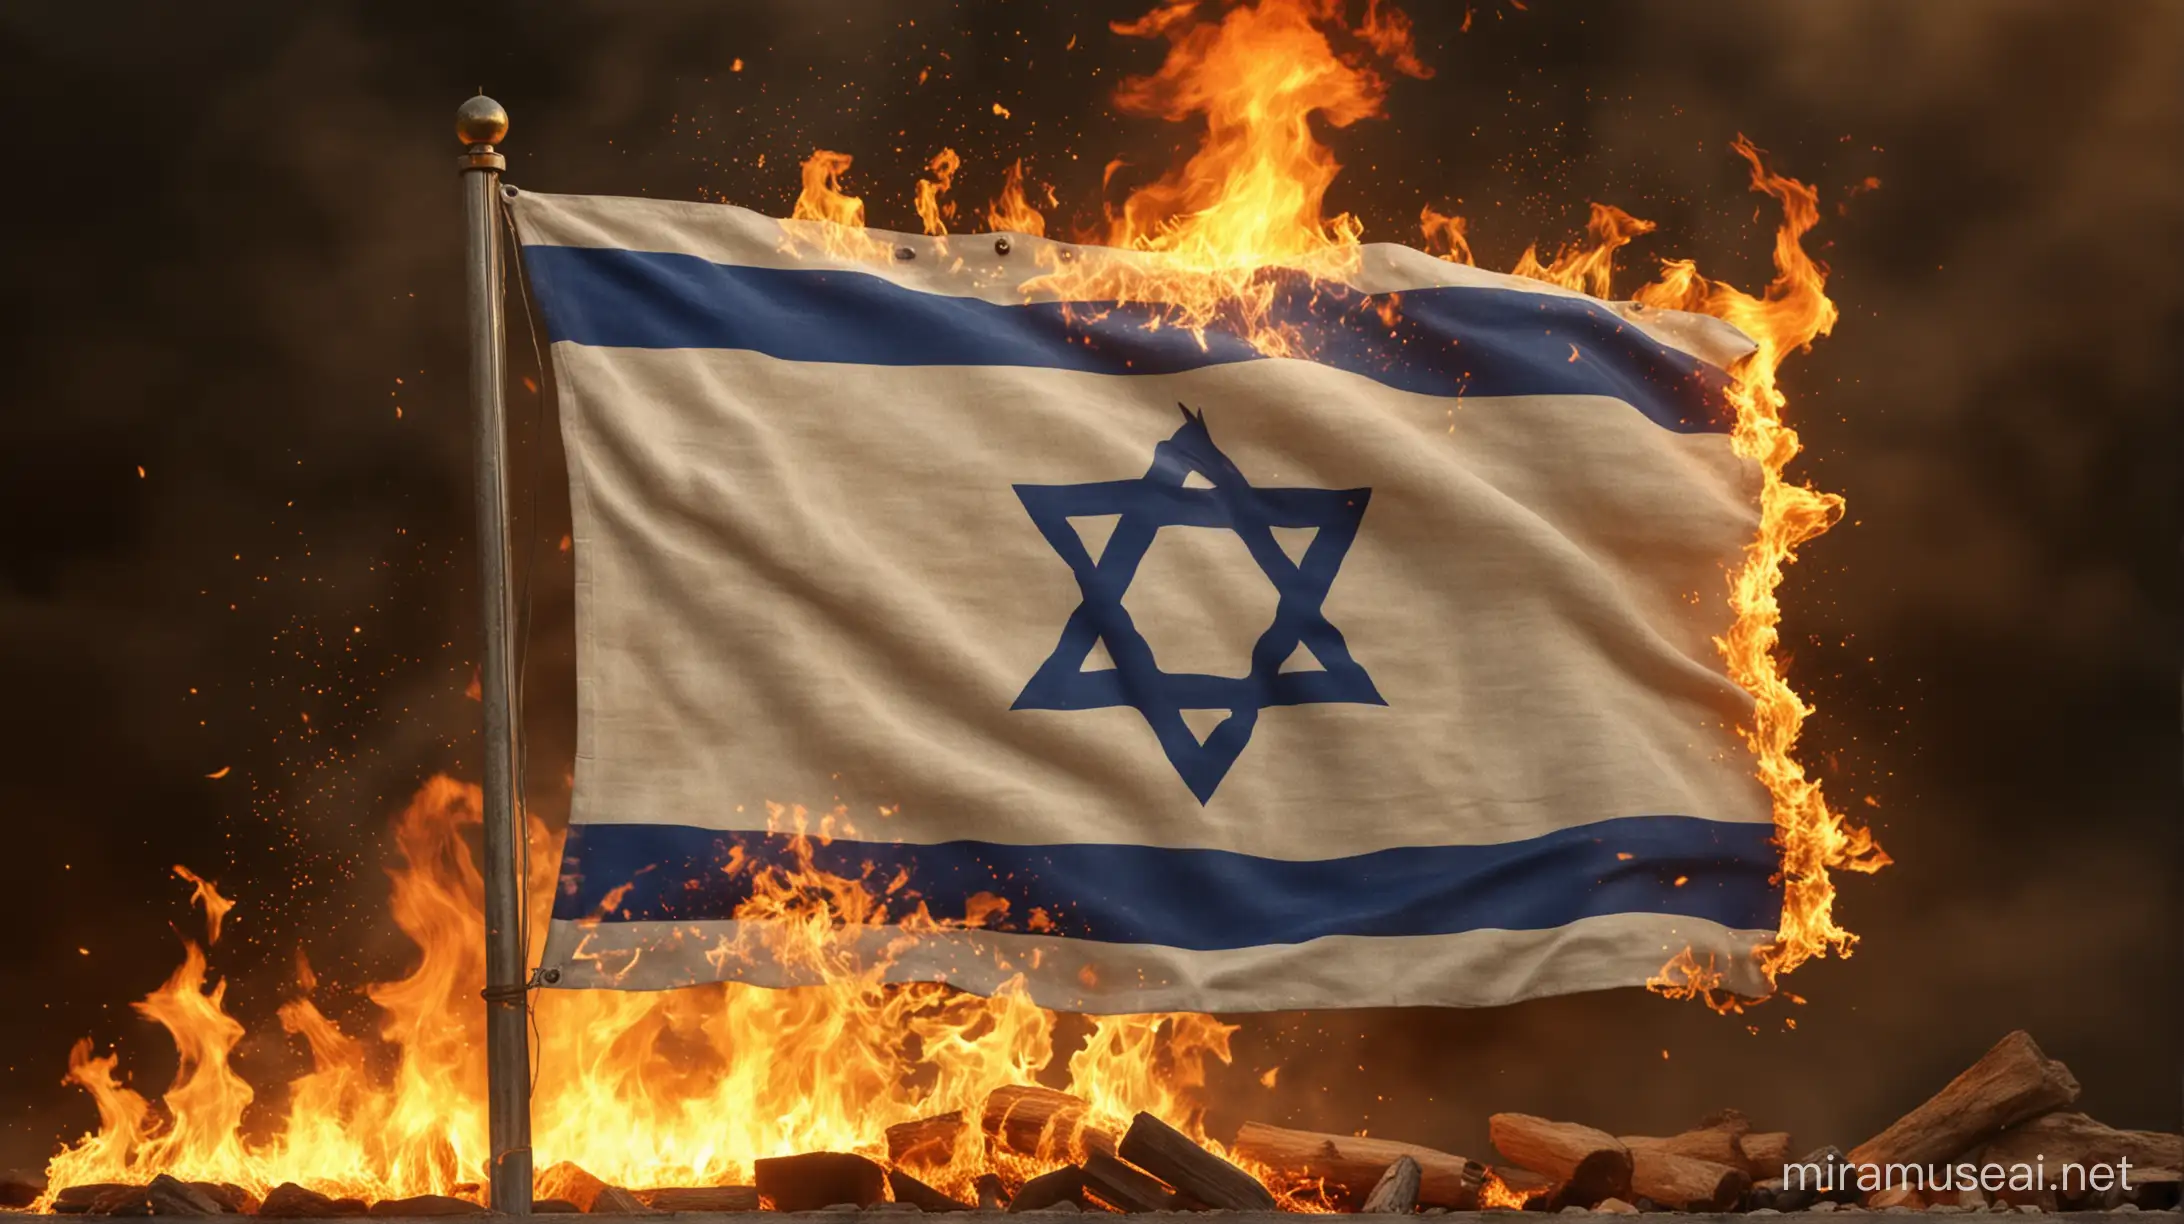 Multidimensional Israeli Flag Display on Leijona with Fiery Flames